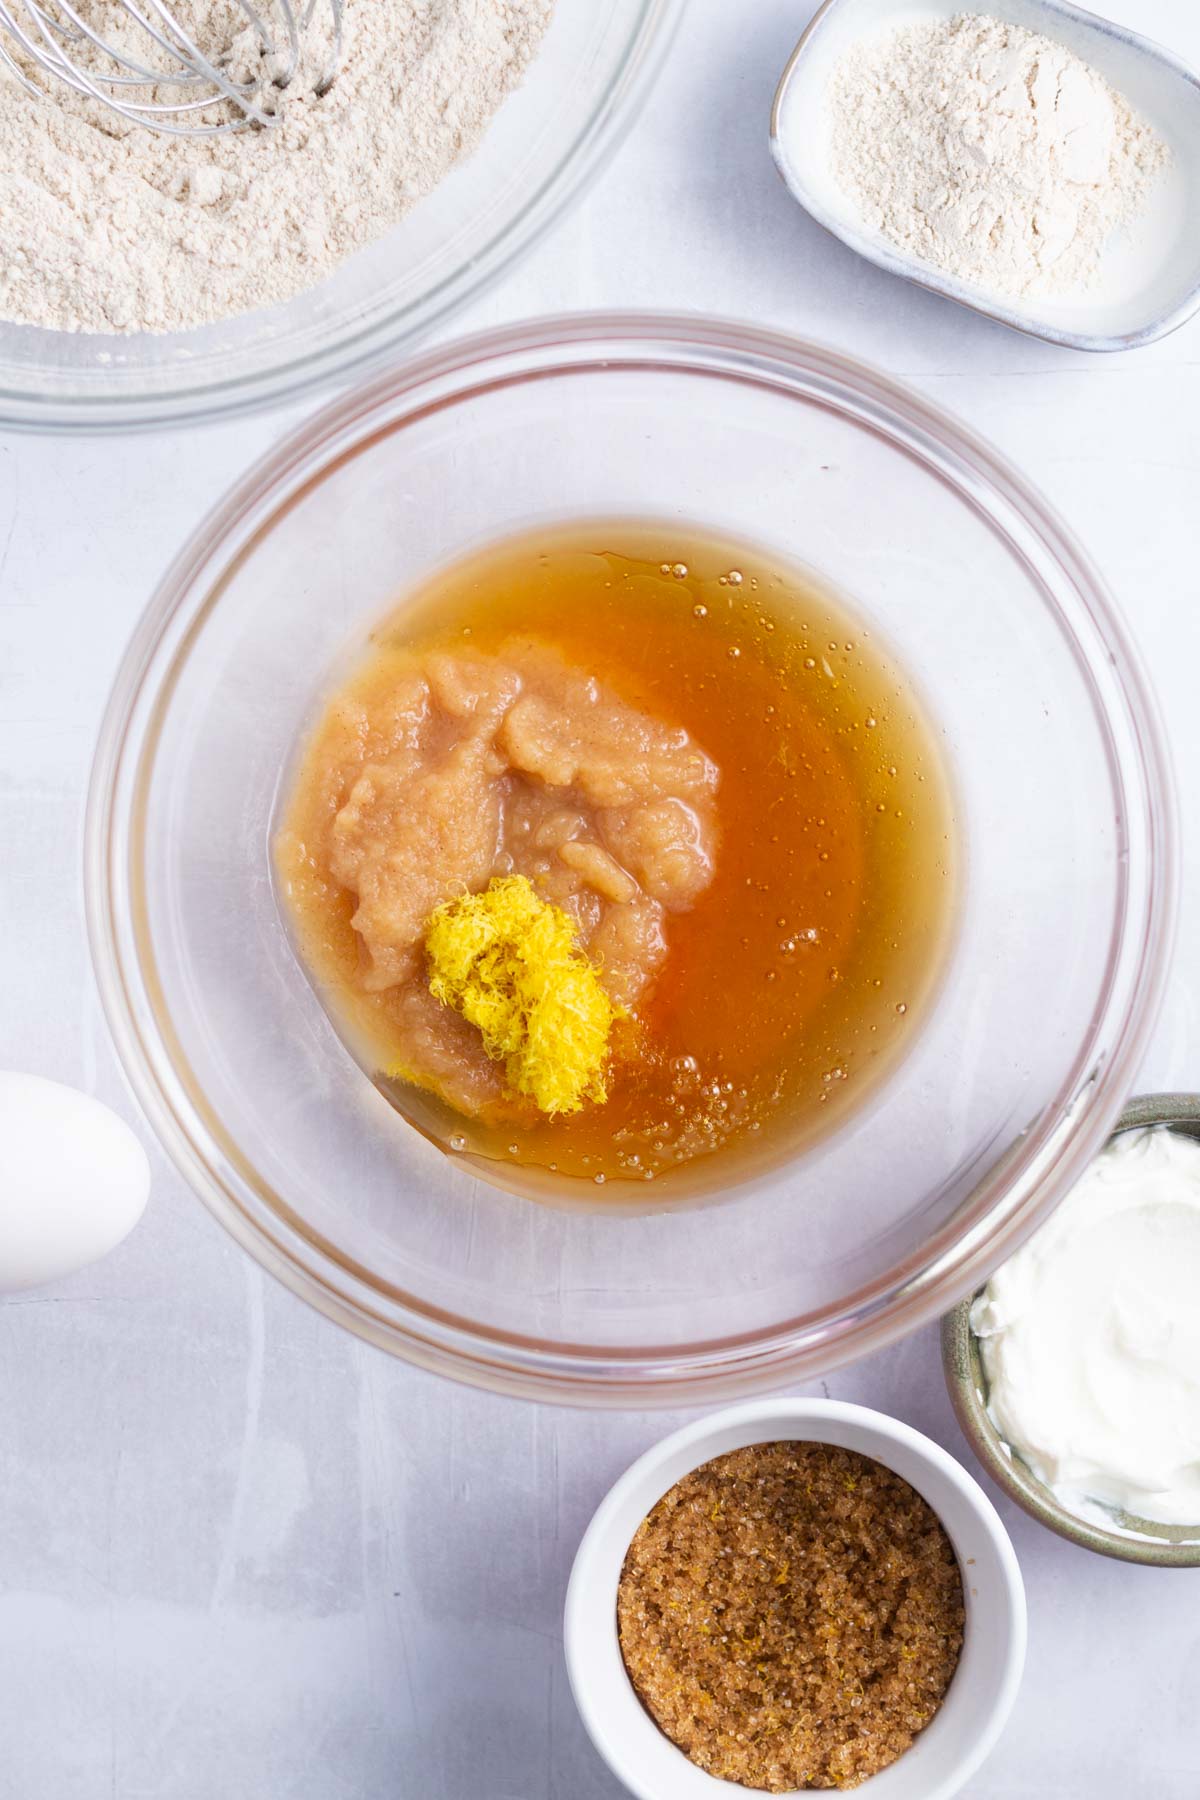 applesauce, honey and lemon zest in a bowl